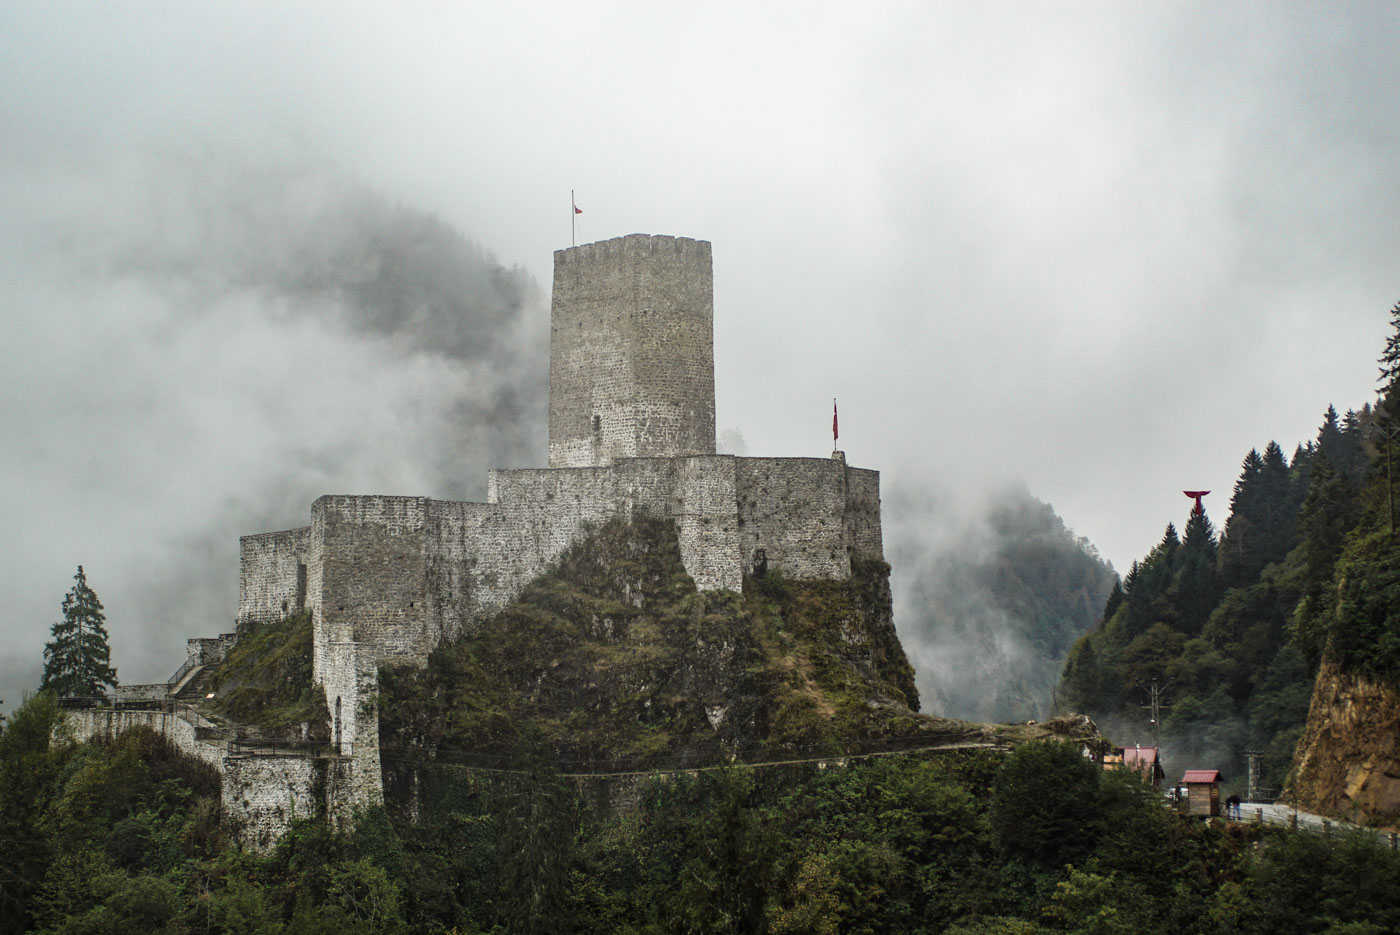 Zu sehen ist eine mittelalterliche Burg die sich auf einen Felsgrat festhält. Der Bergfried erhebt sich meterweise in die Höhe der Hintergrund ist wolkenverhangen und vereinzelt ist der gegenüberliegende Berghang zu erkennen.